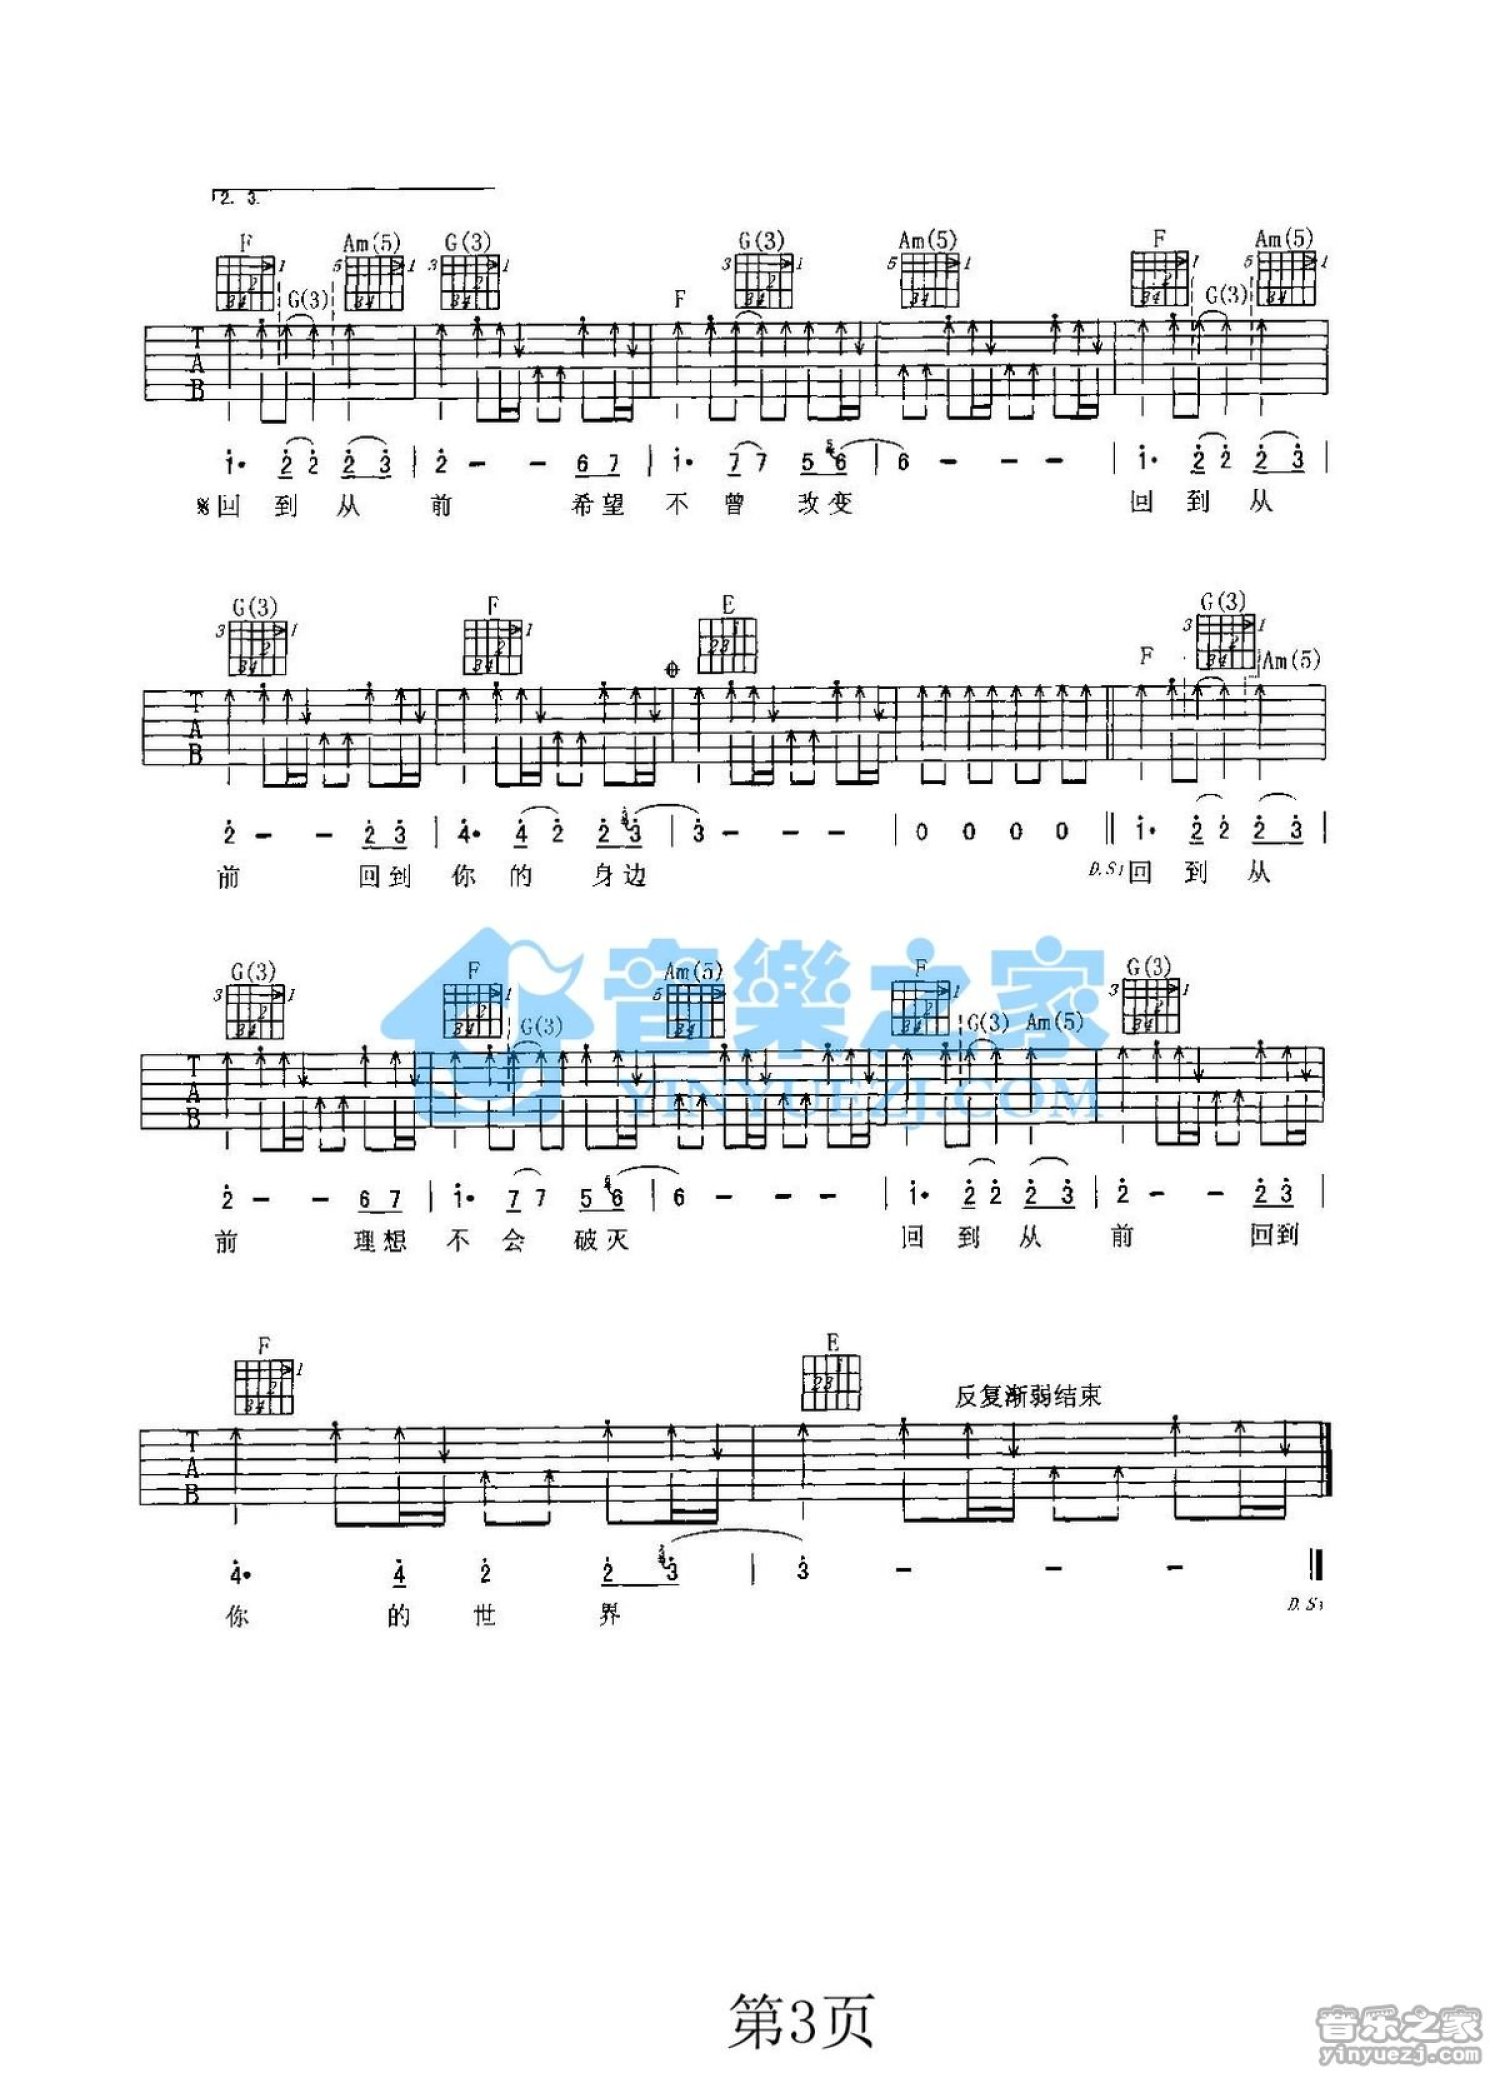 《手写的从前》周杰伦 吉他谱初级版 酷音小伟吉他教学 - 全屏看谱